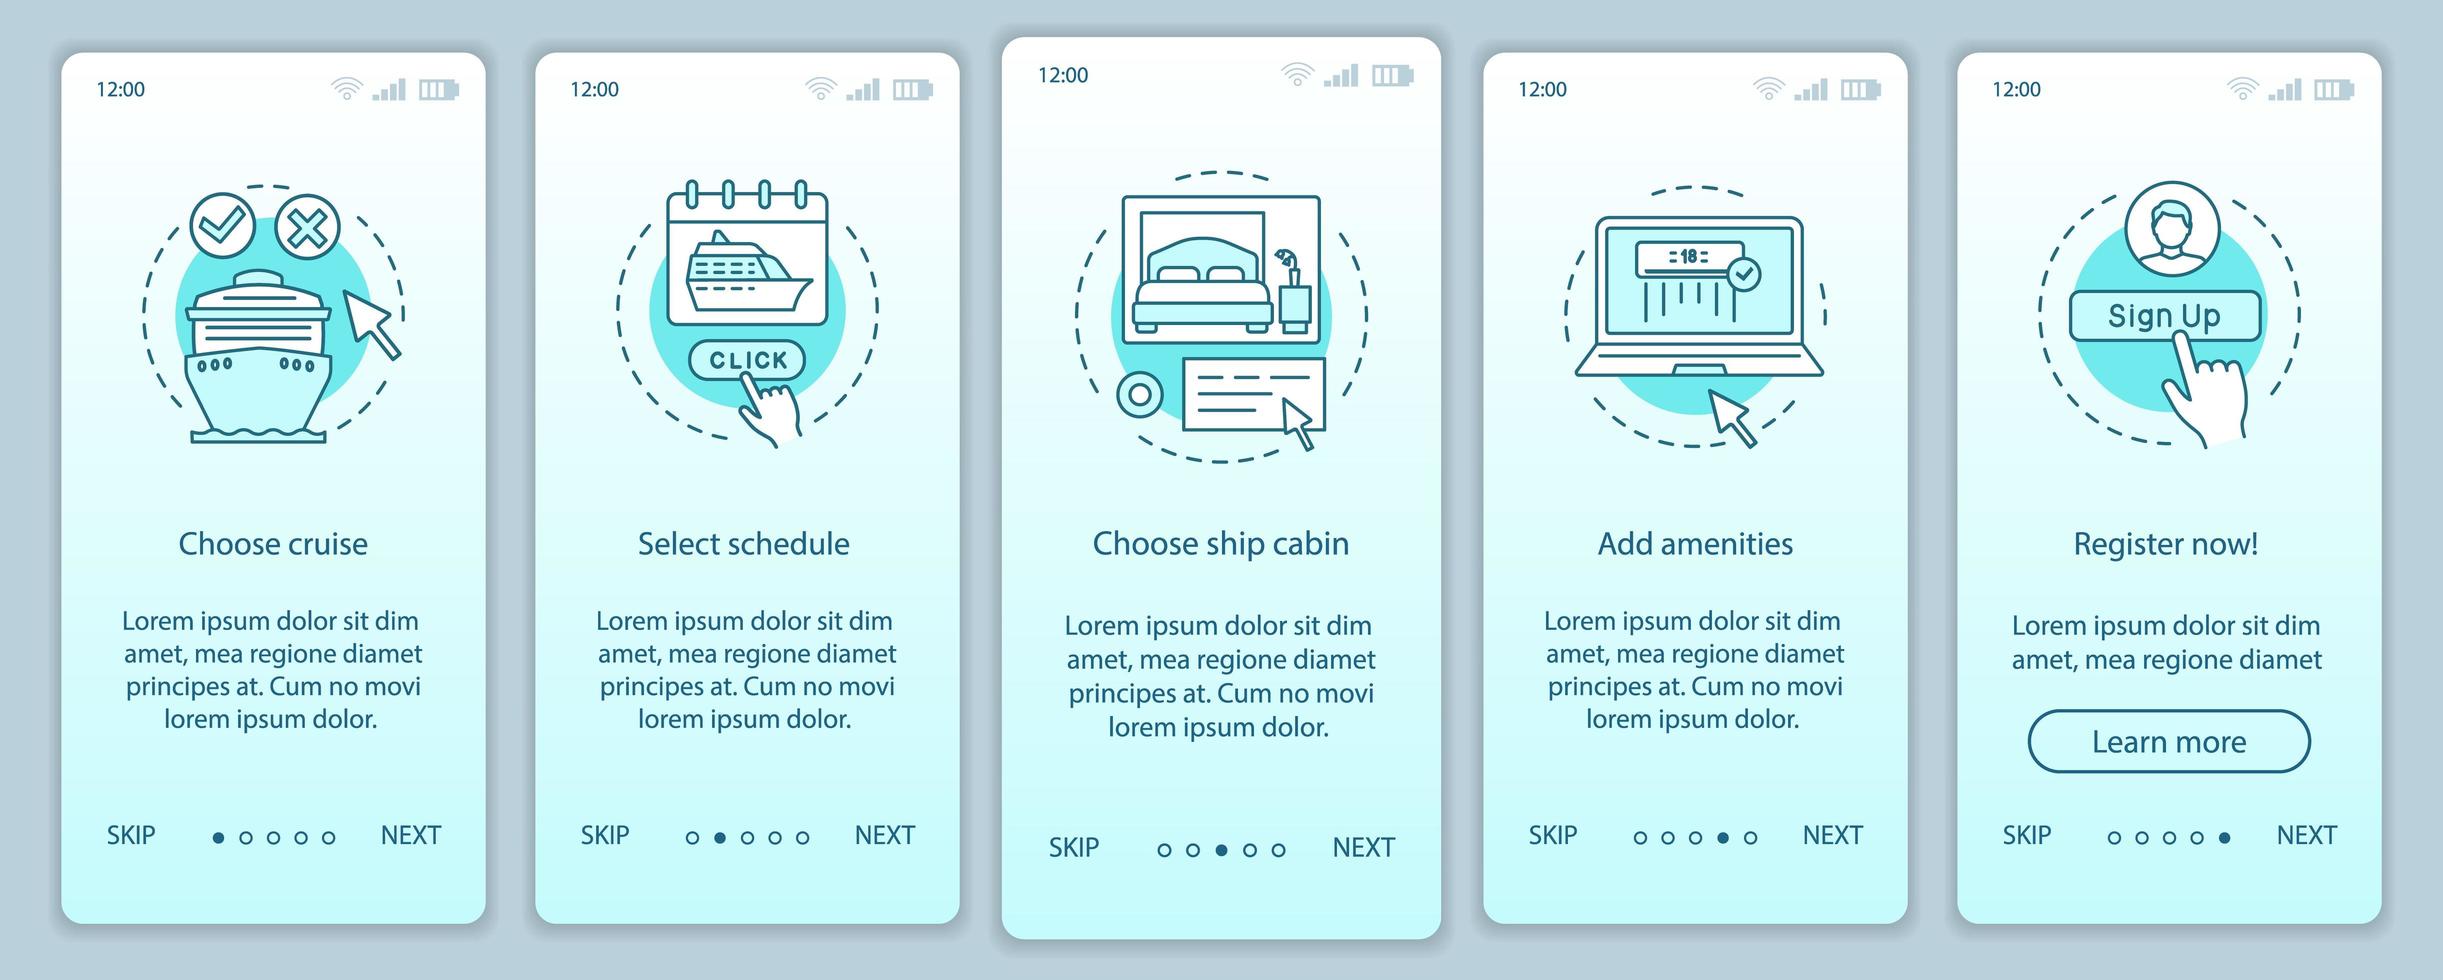 pagina dell'app mobile per la prenotazione di crociere online vettore